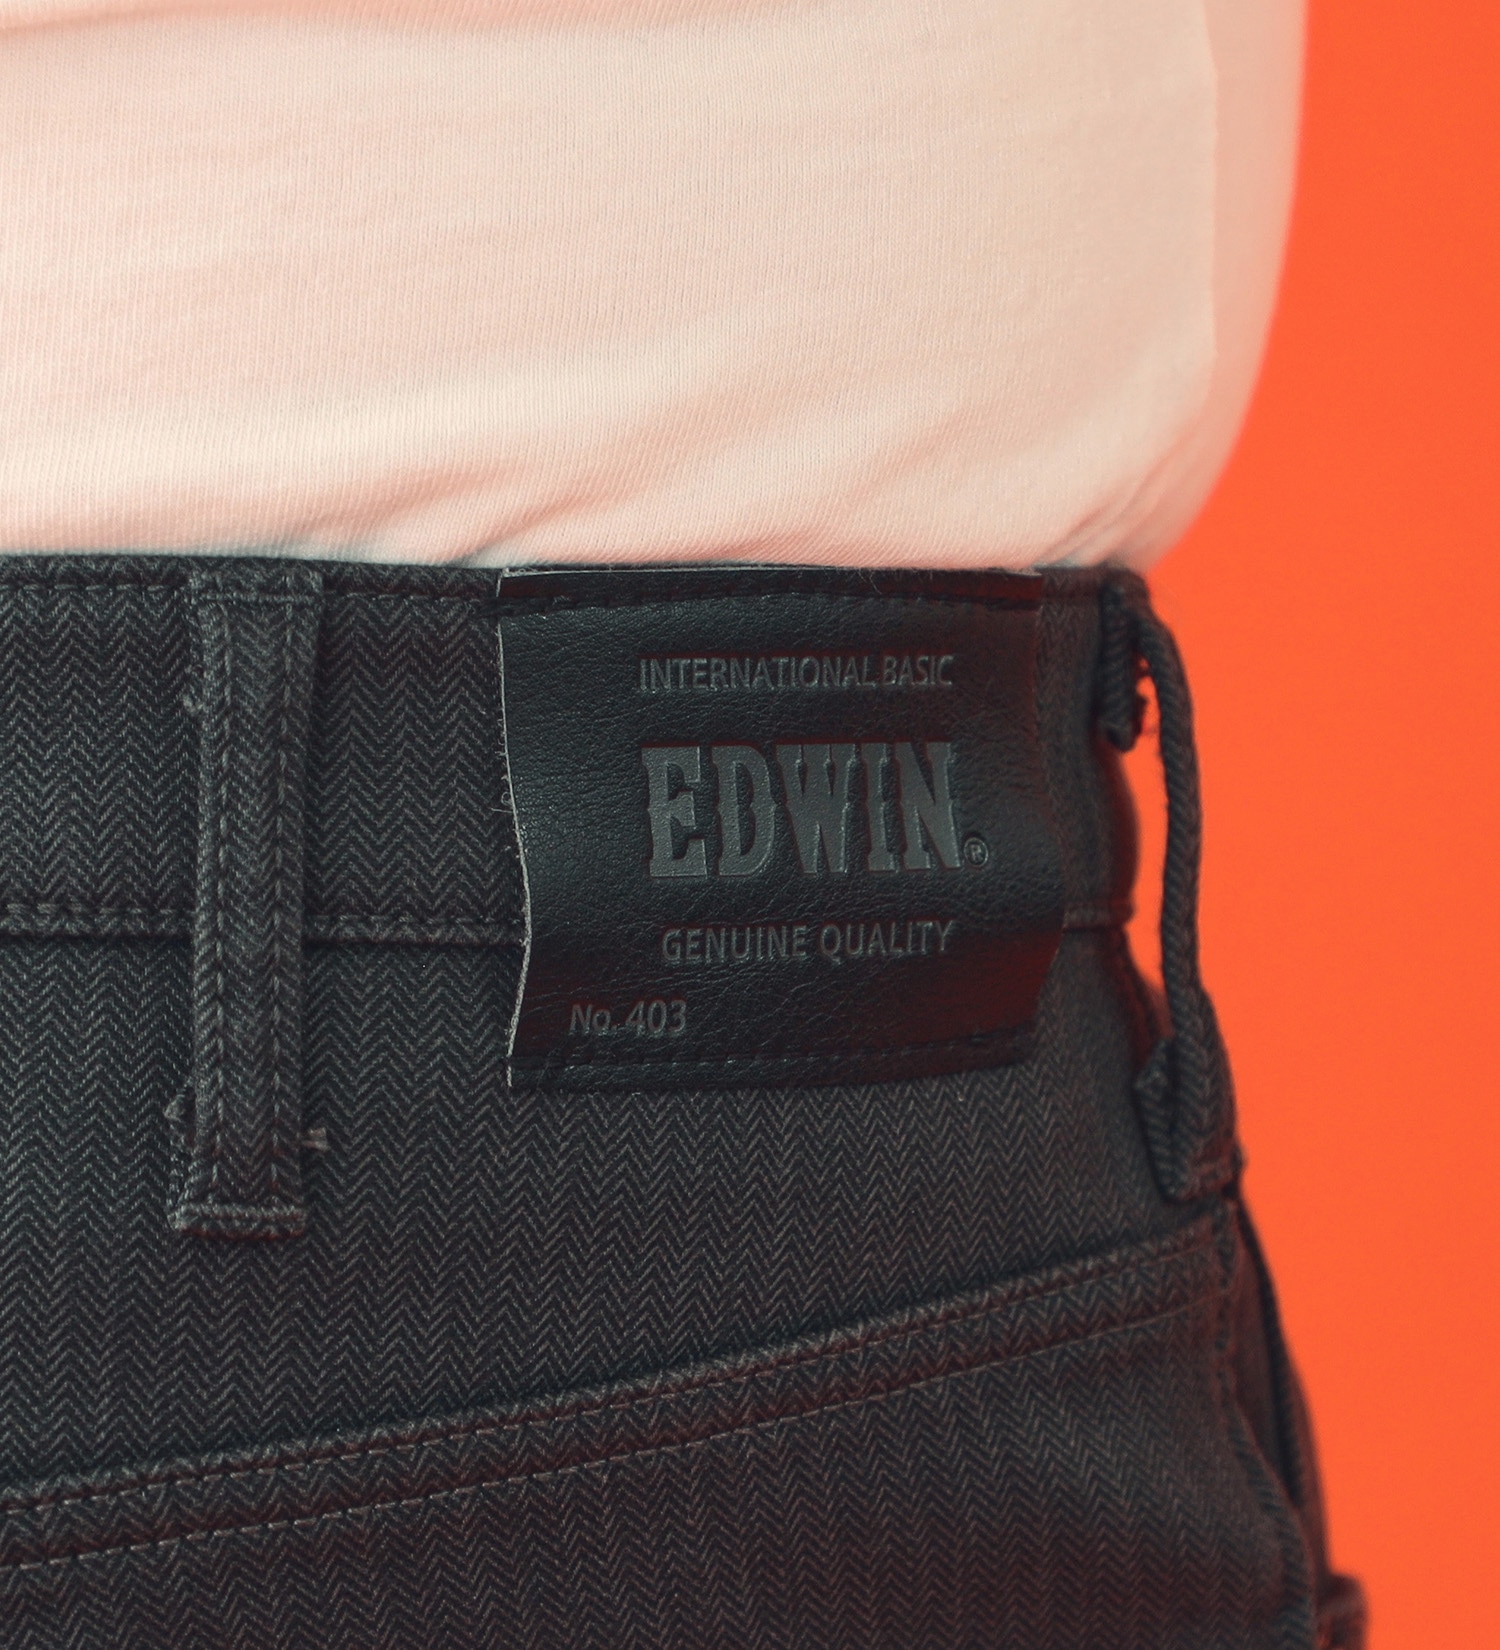 EDWIN(エドウイン)の【BLACKFRIDAY】【大きいサイズ】2層で暖かい EDWIN インターナショナルベーシック レギュラーストレートパンツ403 WILD FIRE 2層ボンディング構造 【暖】|パンツ/パンツ/メンズ|チャコールグレー